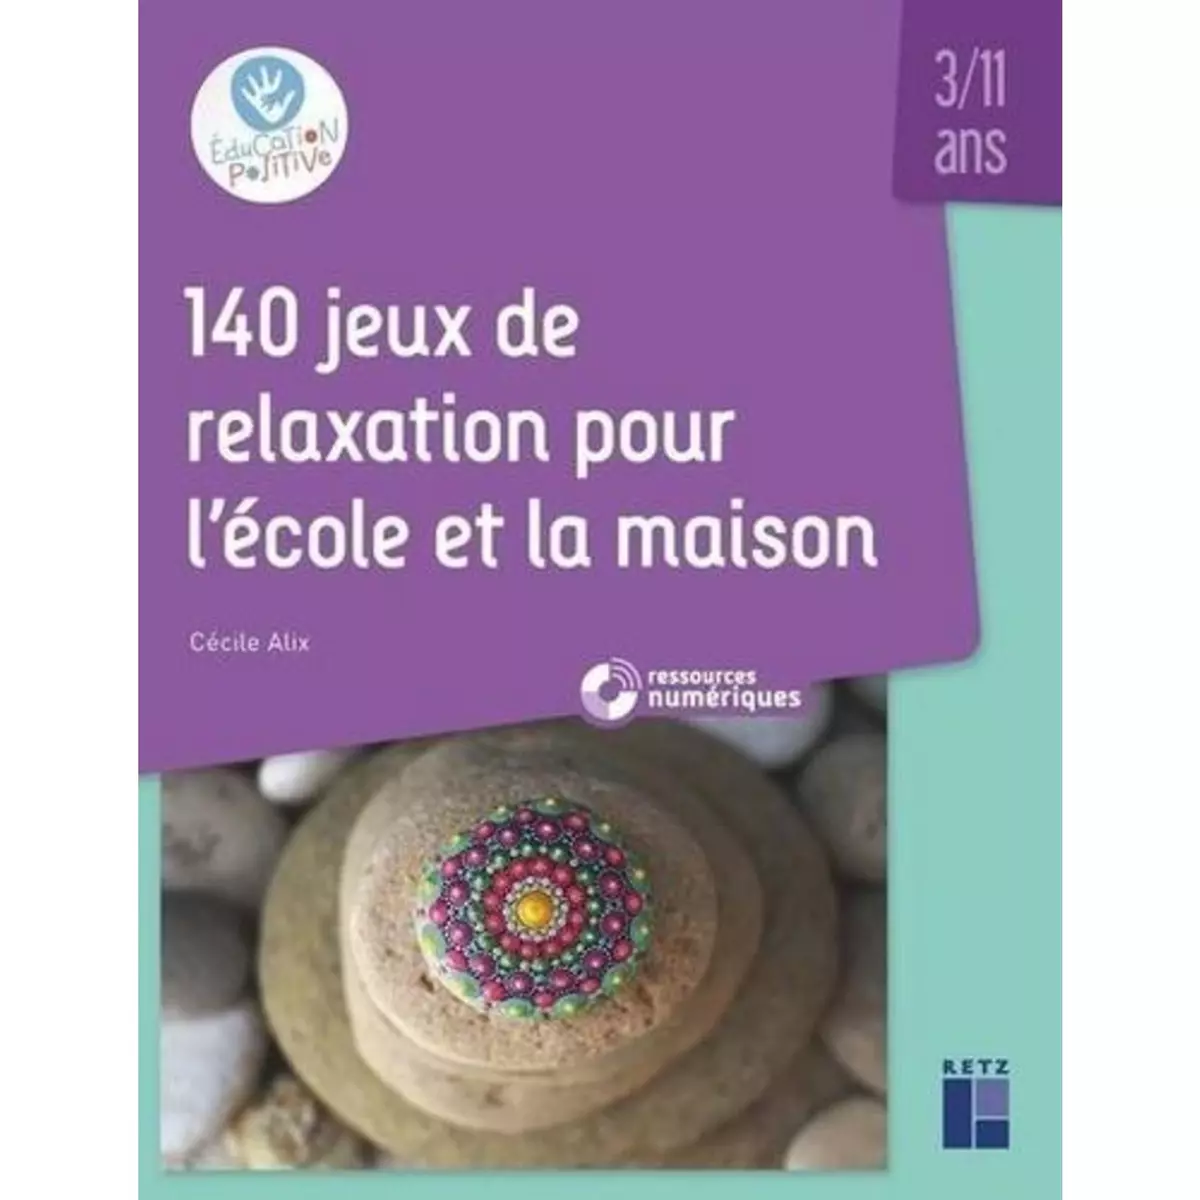  140 JEUX DE RELAXATION POUR L'ECOLE ET LA MAISON, Alix Cécile